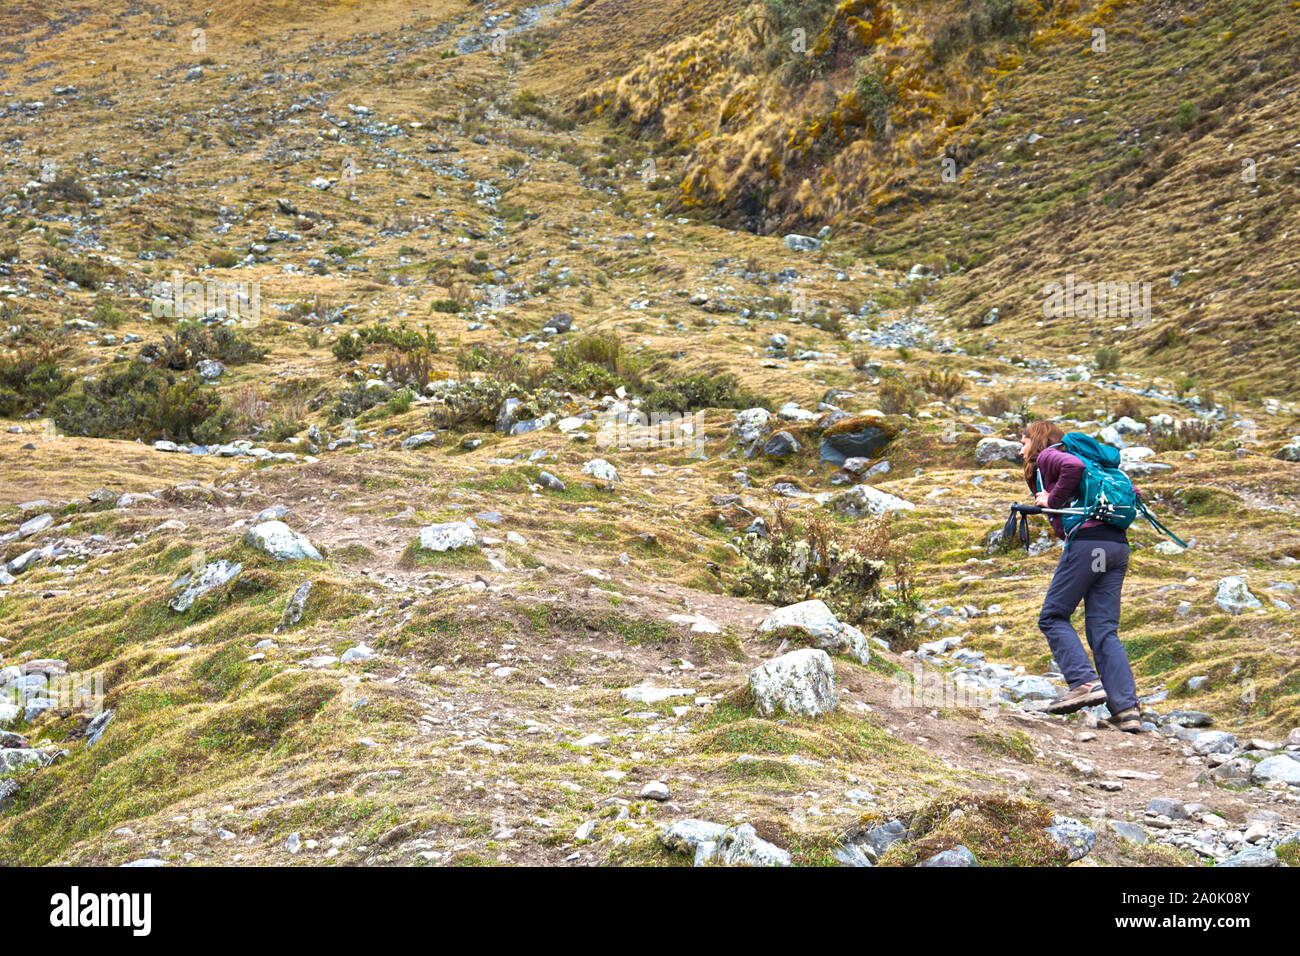 Il Salkantay trek in Perù (talvolta denominato Salcantay trail) è l'alternativa più popolare - Machu Picchu - offre agli escursionisti un incredibilmente diversificata esperienza di trekking, è relativamente facile accesso da Cusco e a differenza del classico Inca Trail, non vi sono limitazioni di permessi. Il sentiero soggiorni attraverso incredibili paesaggi dove la pianura giungla dà modo di highland impostazioni alpino e montagne ghiacciate, la più imponente delle quali è il Nevada Salkantay. Foto Stock